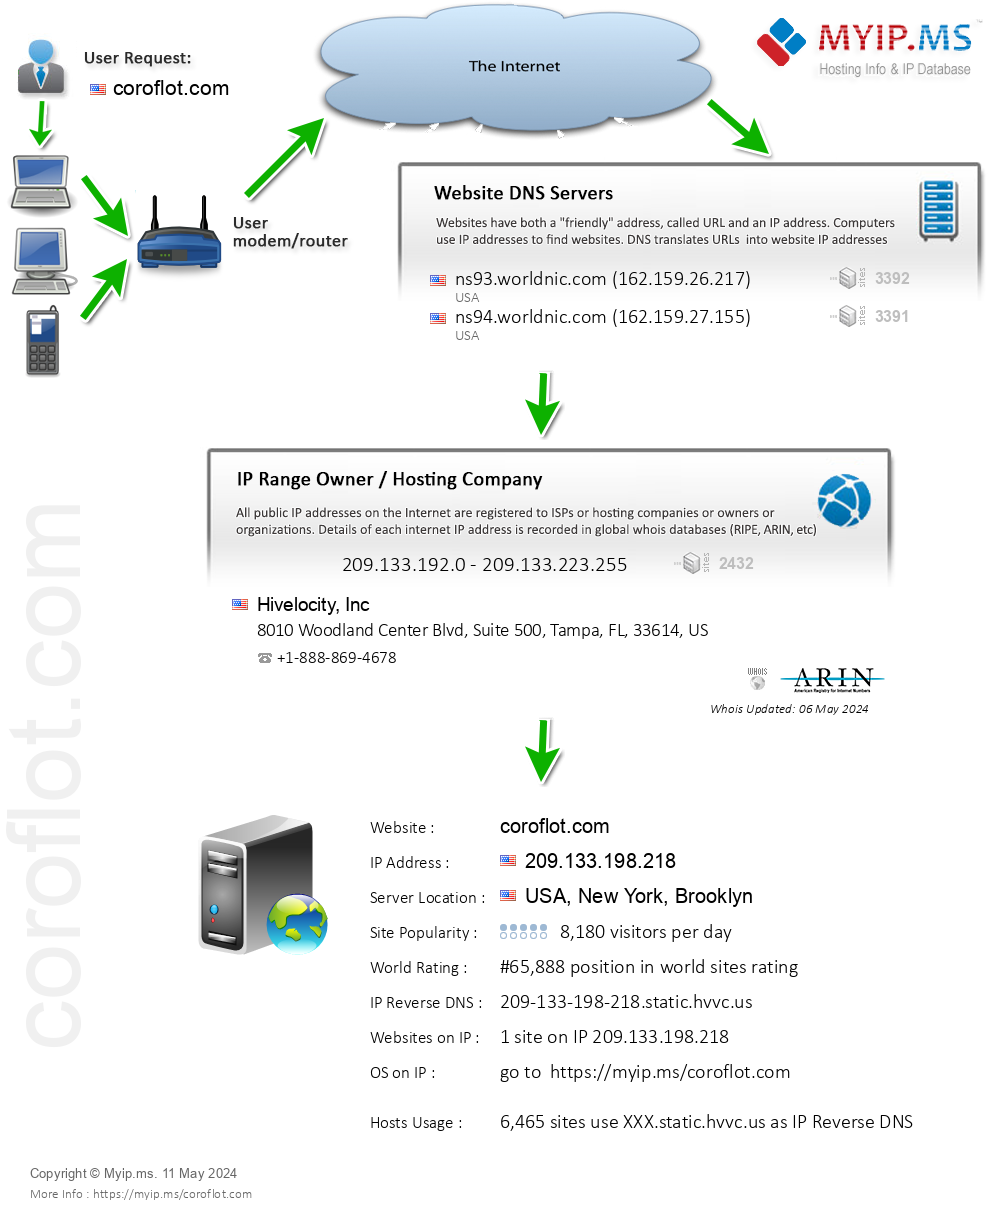 Coroflot.com - Website Hosting Visual IP Diagram